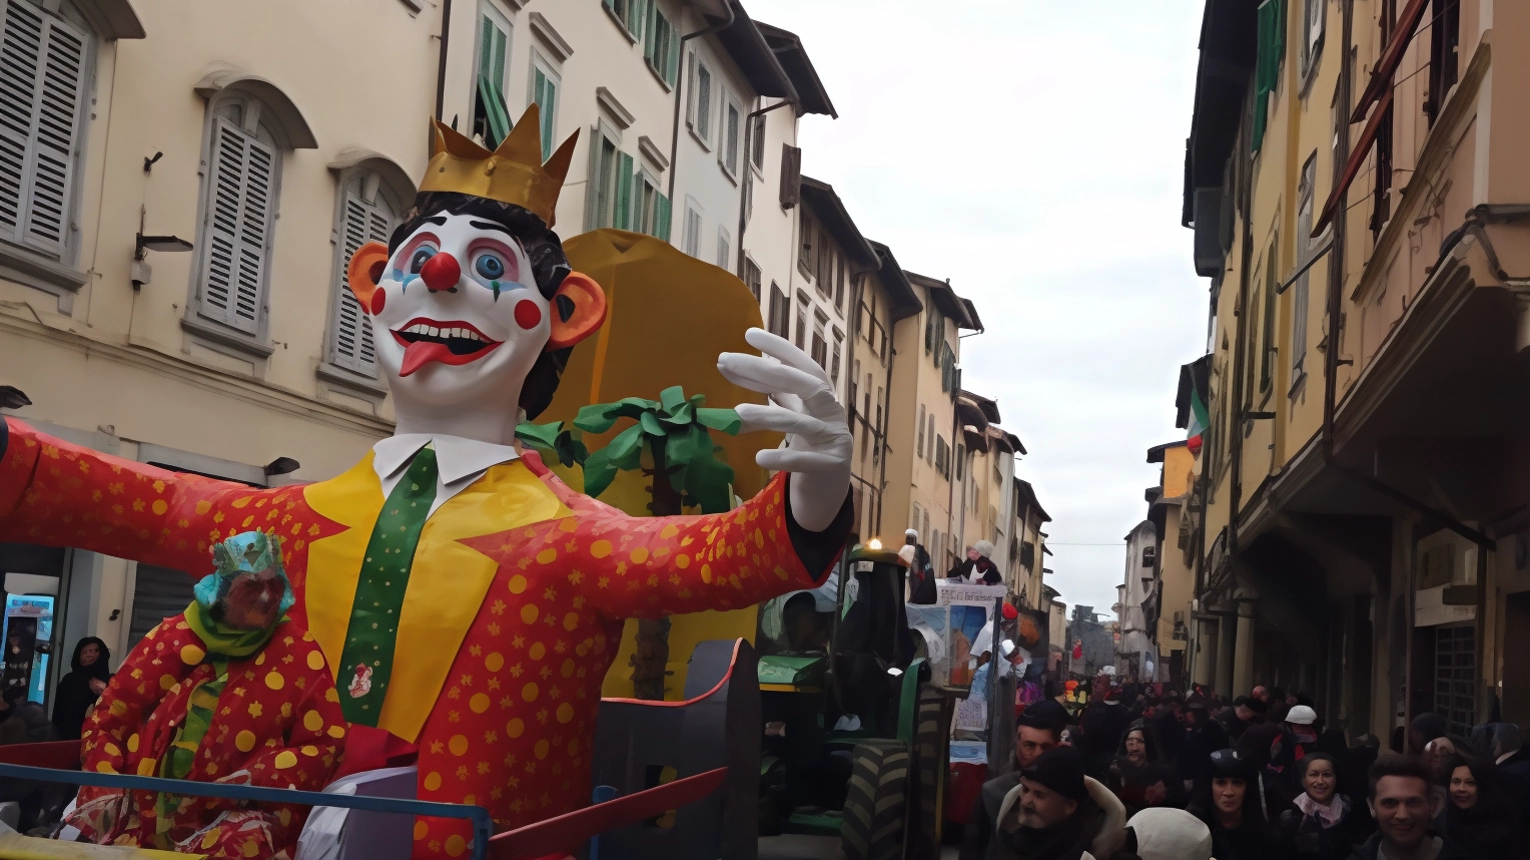 Carri e maschere d’estate  in centro. A San Giovanni debutta  il Carnevale